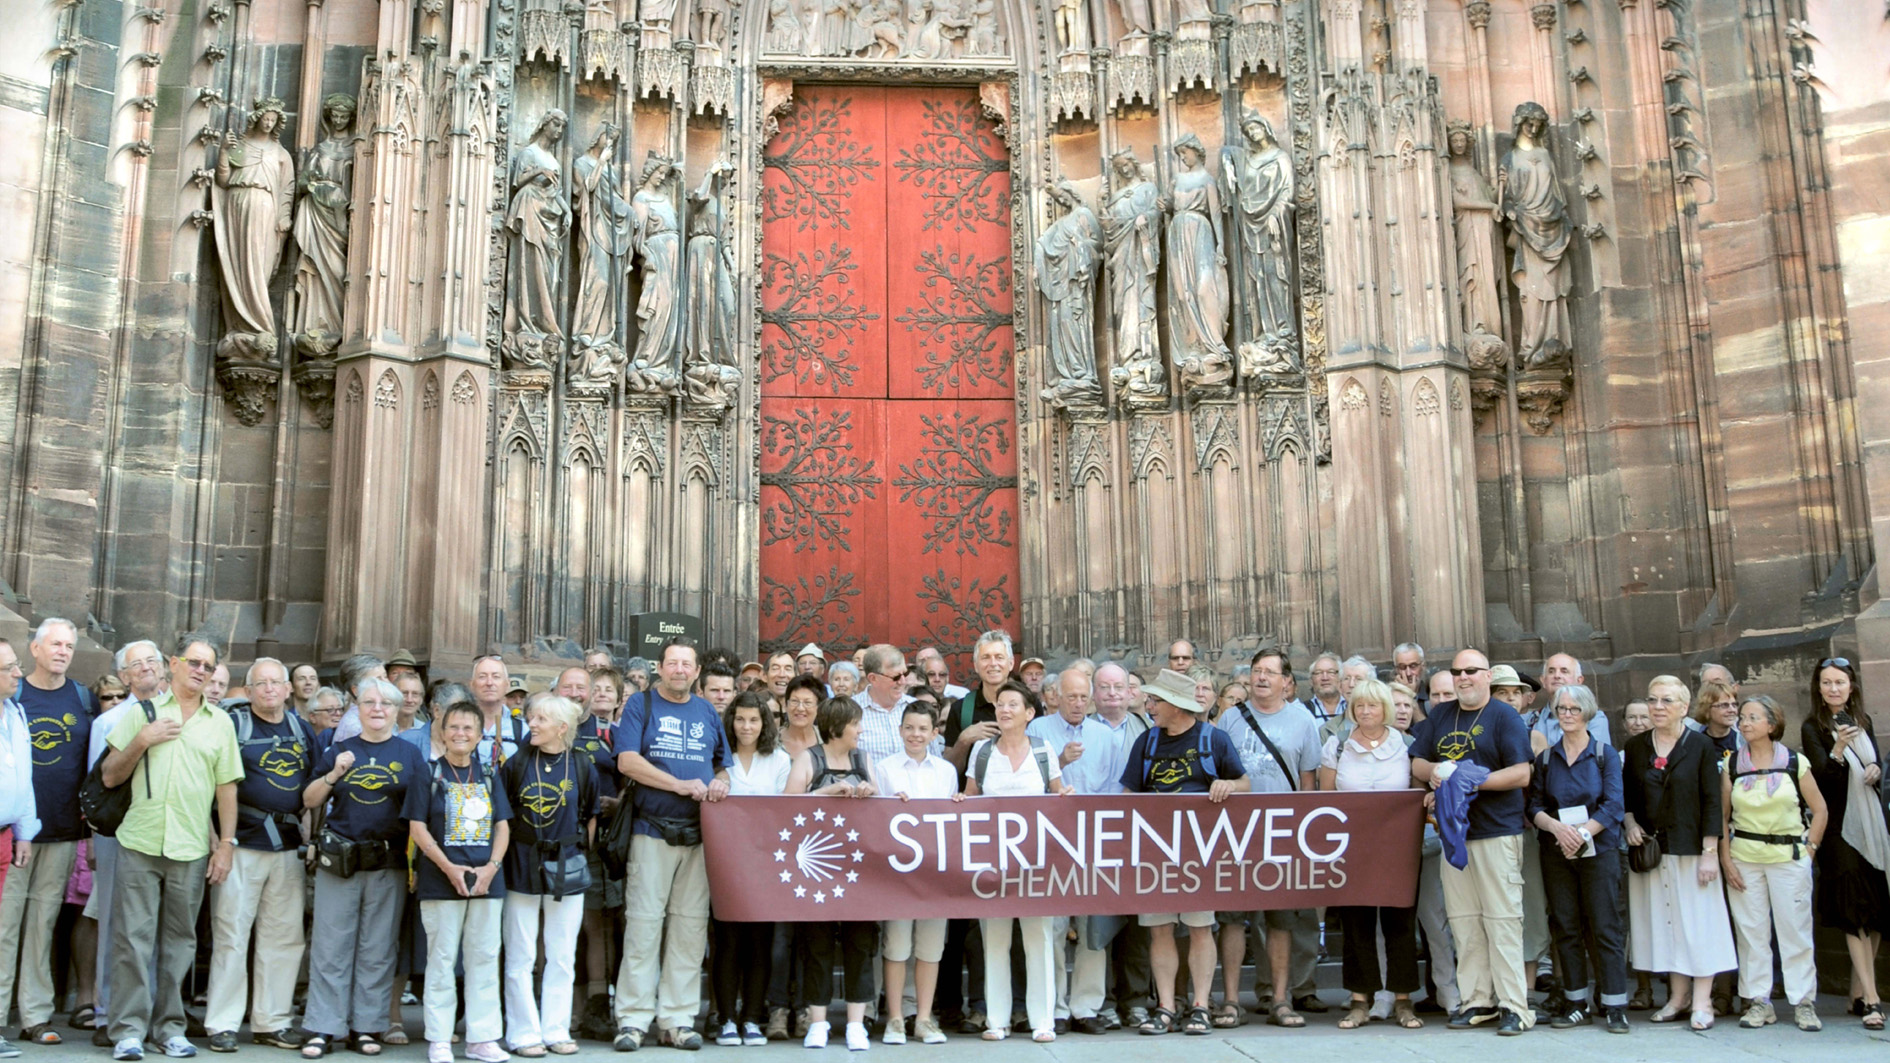 Gruppenbild von Pilgern vor Metzer Kathedrale mit Sternenweg Banner